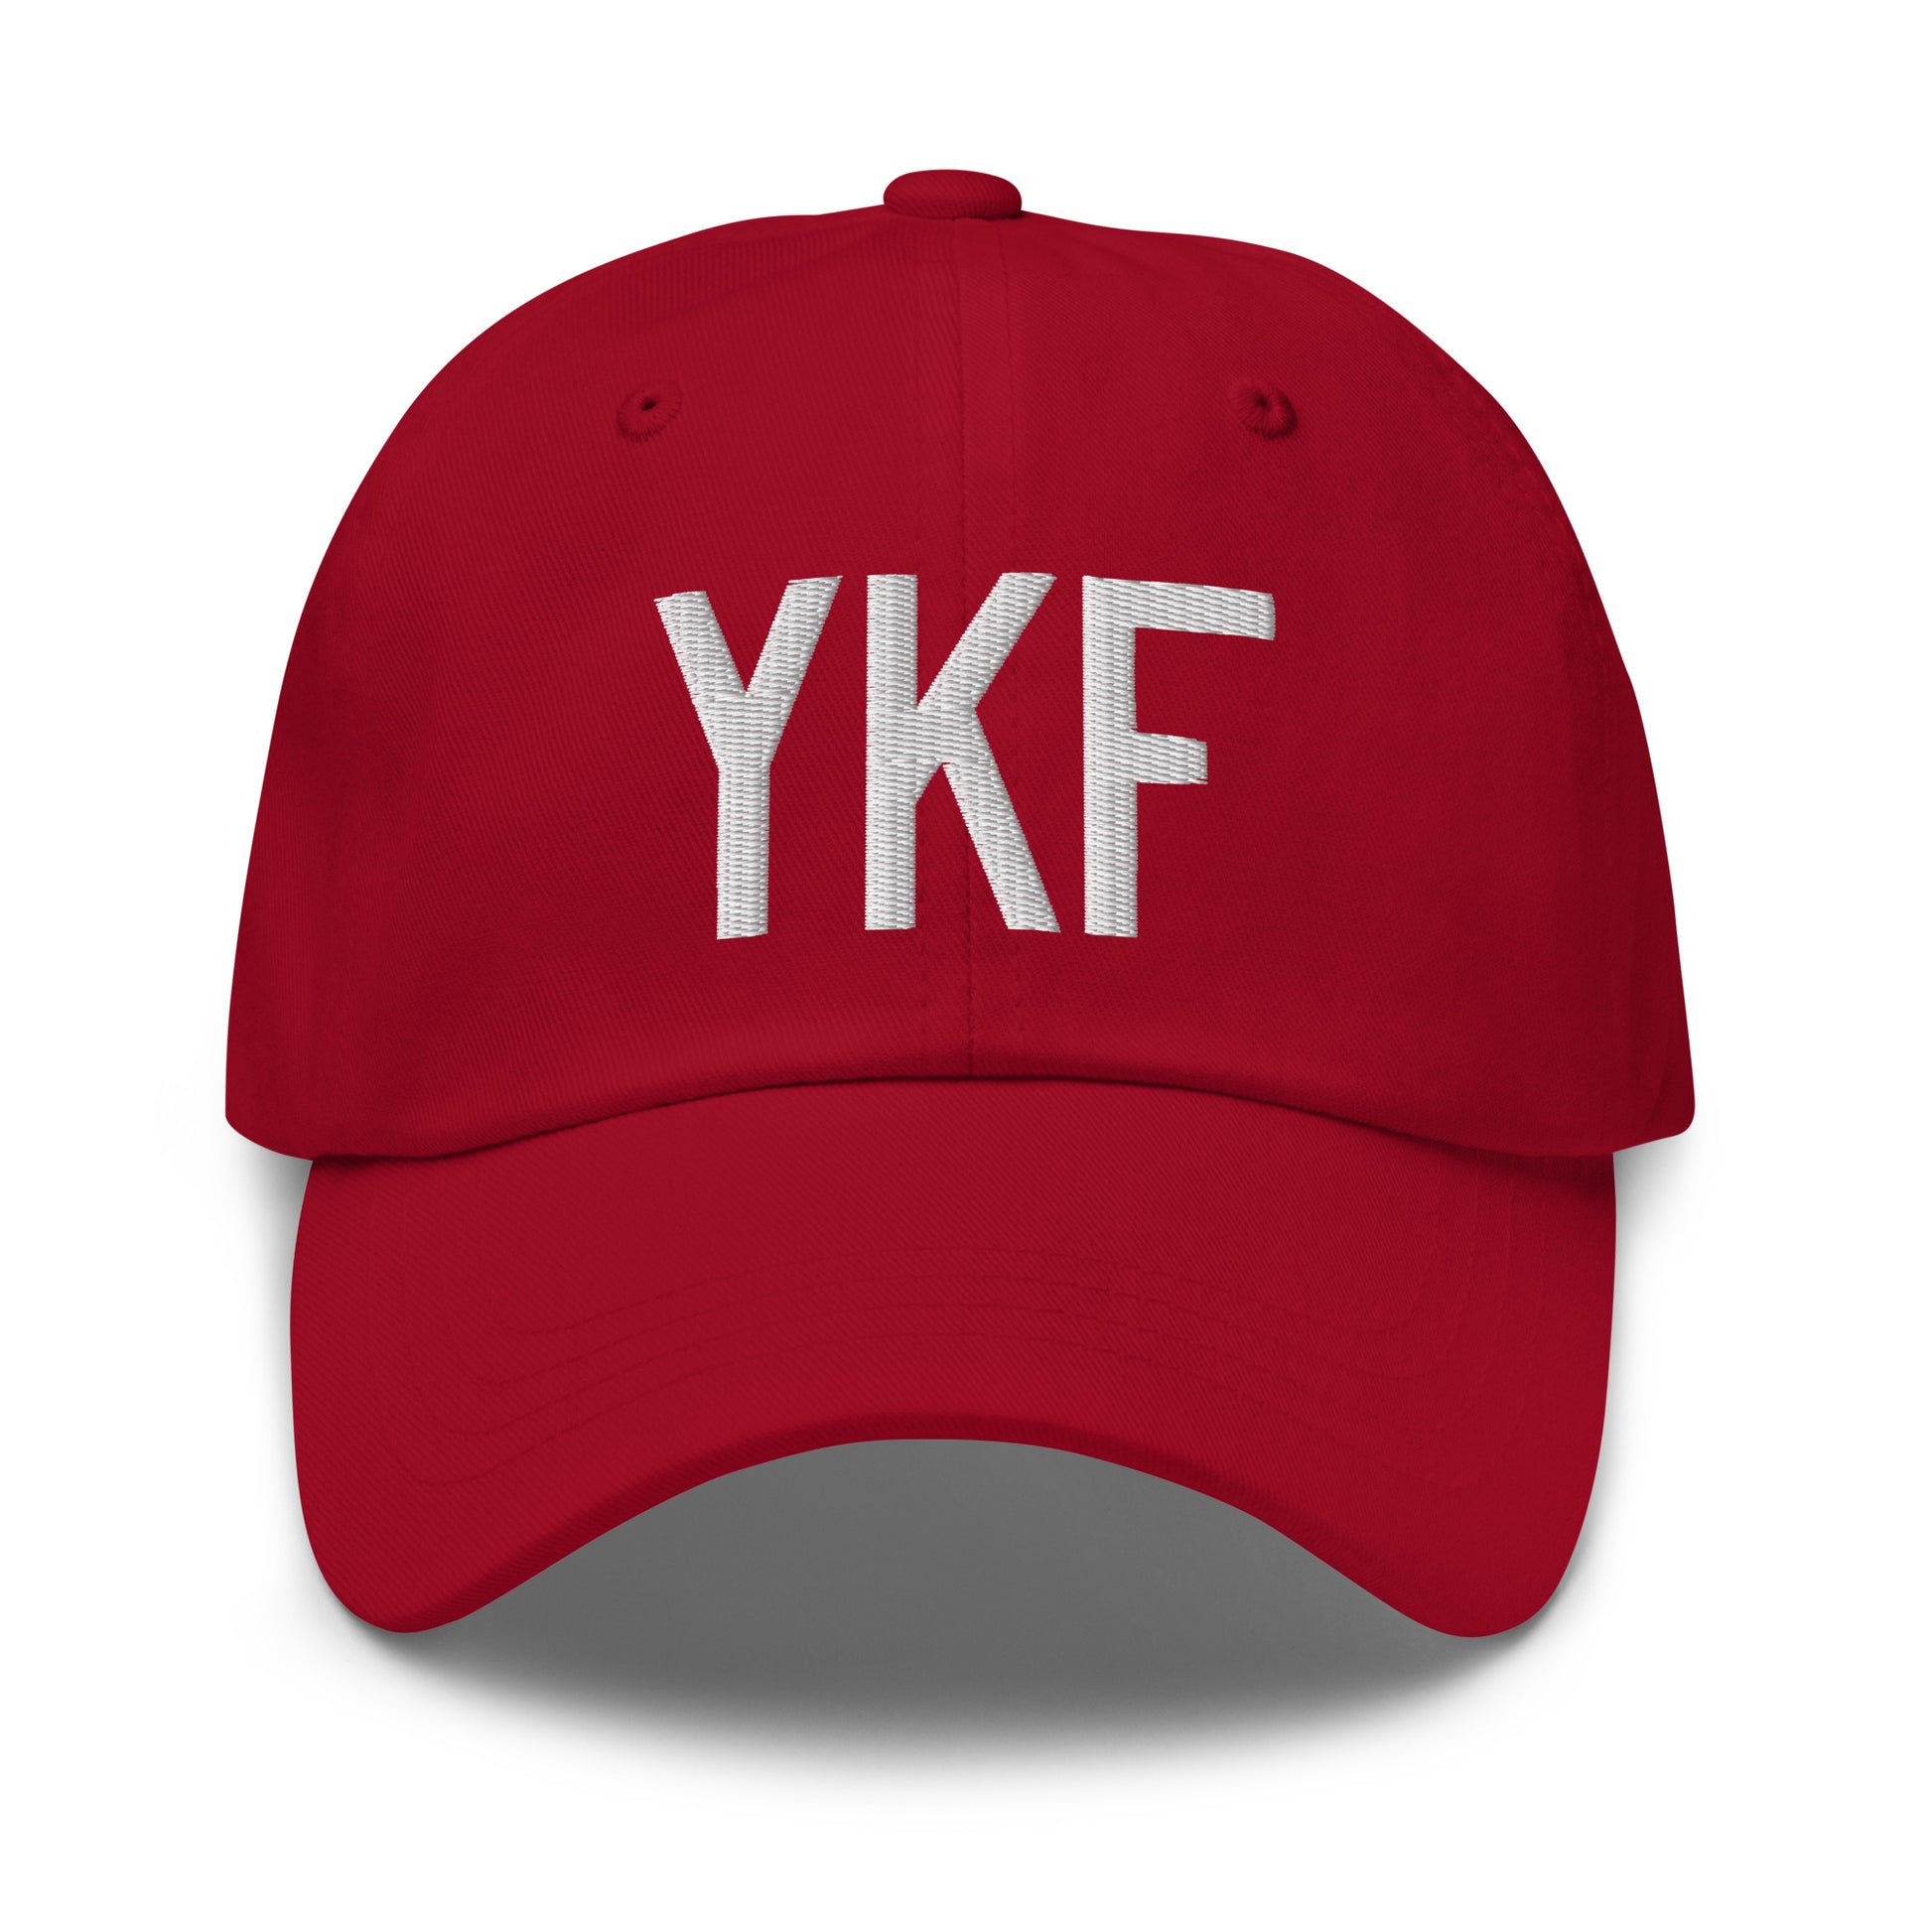 Airport Code Baseball Cap - White • YKF Waterloo • YHM Designs - Image 19